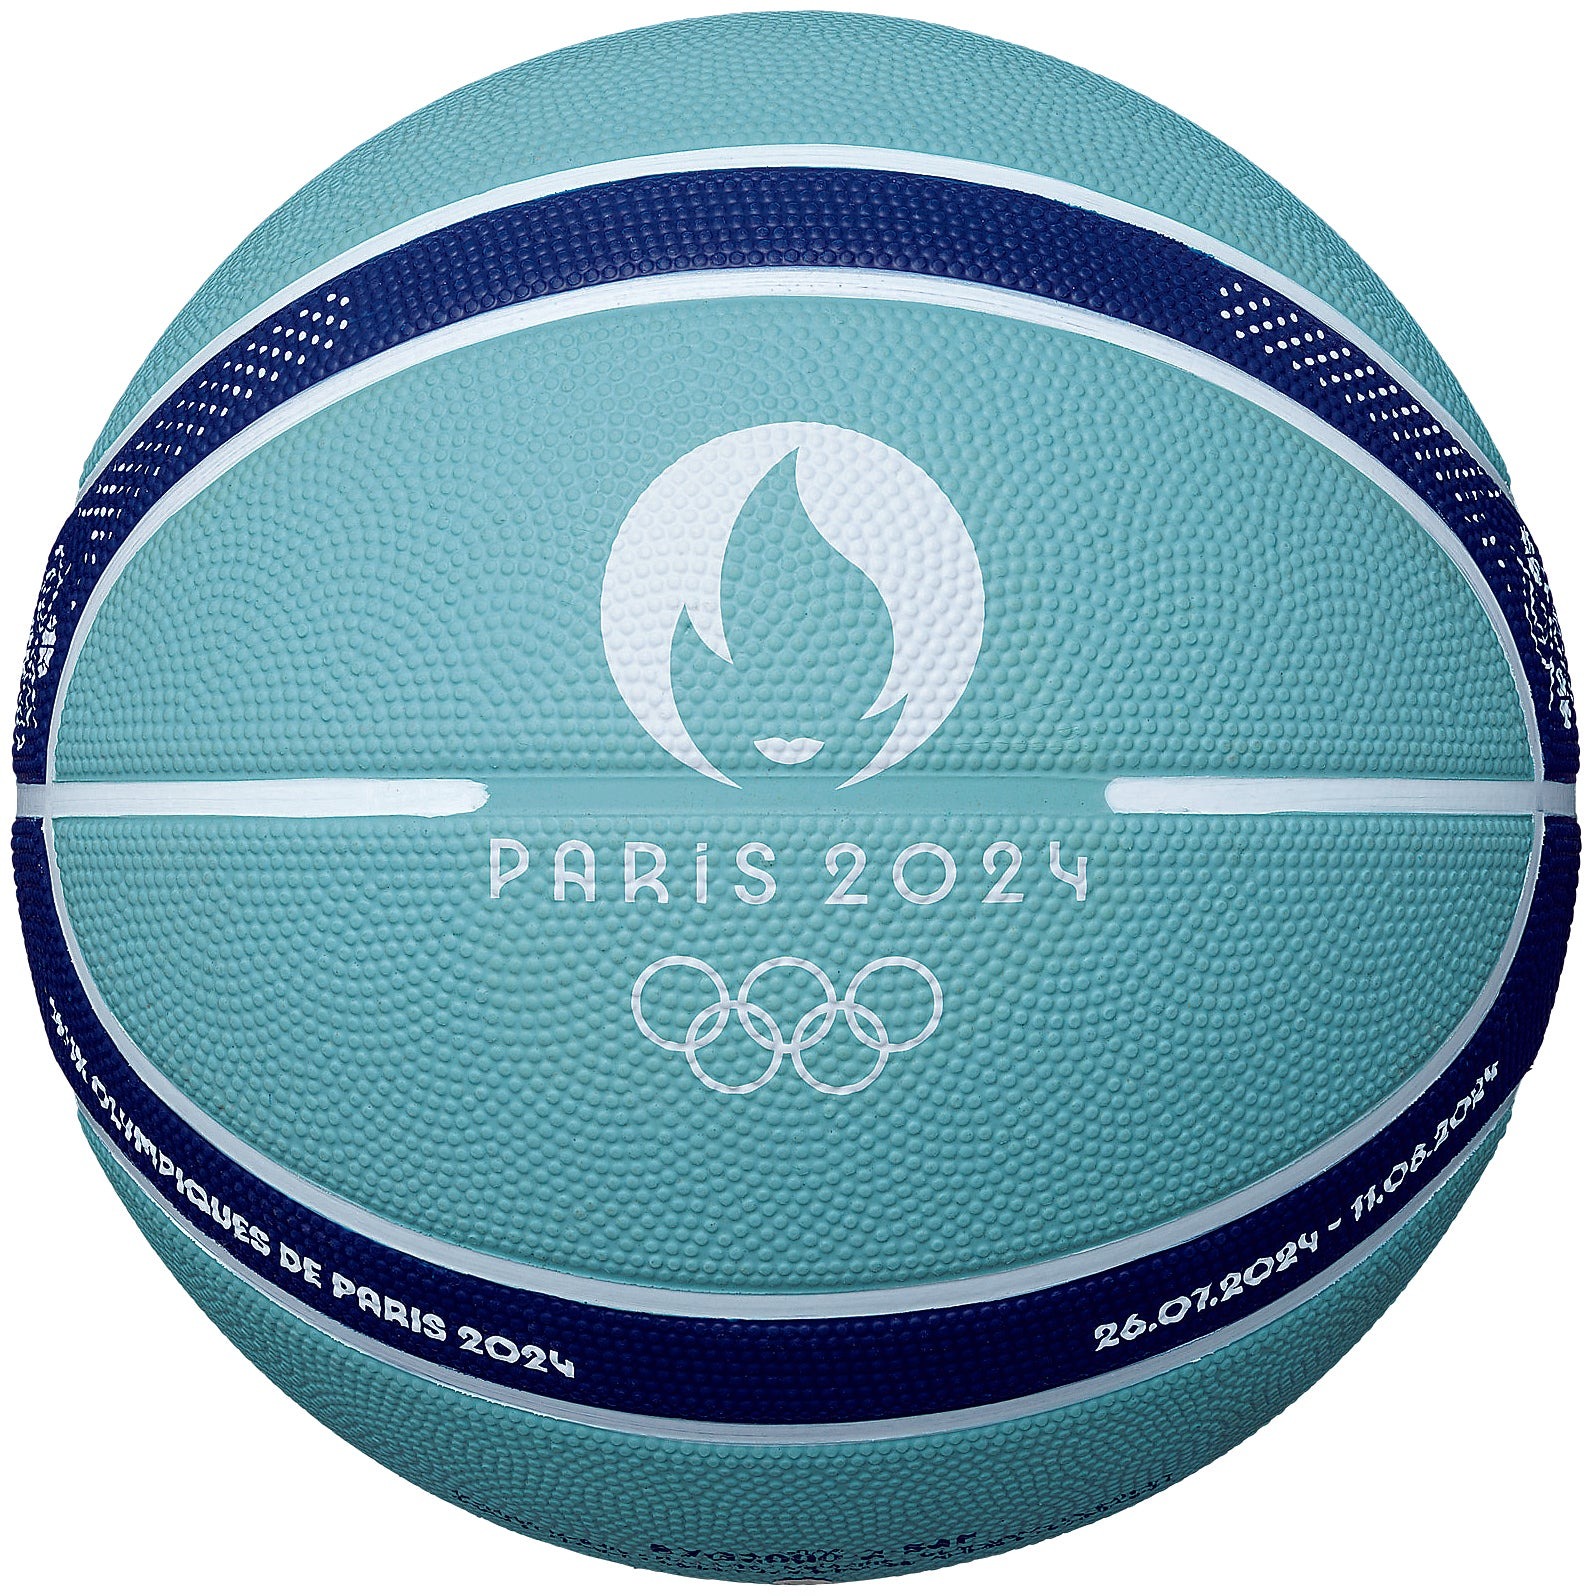 モルテン バスケットボール 7号球【Paris 2024 公式試合球レプリカ】B7G2000-S4F